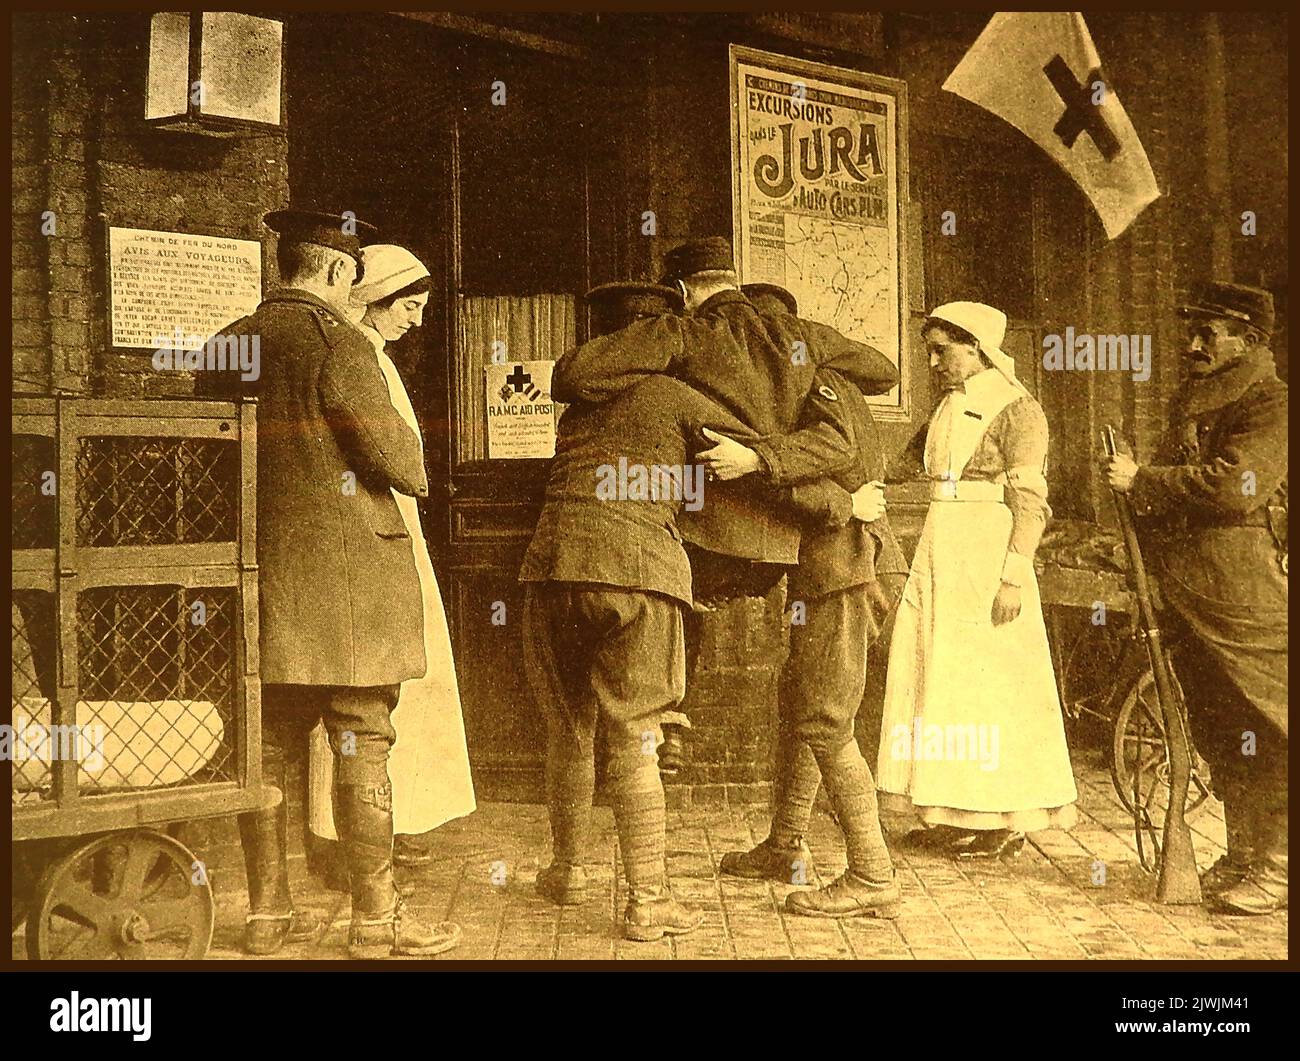 WWI - R.A.M.C. Mitarbeiter des Royal Army Medical Corps tragen den ersten verwundeten Soldaten in die erste „Aid Post“ des Roten Kreuzes in Frankreich, die sich in Räumlichkeiten befindet, die früher von AVIS-Motoren für Exkursionen genutzt wurden Stockfoto